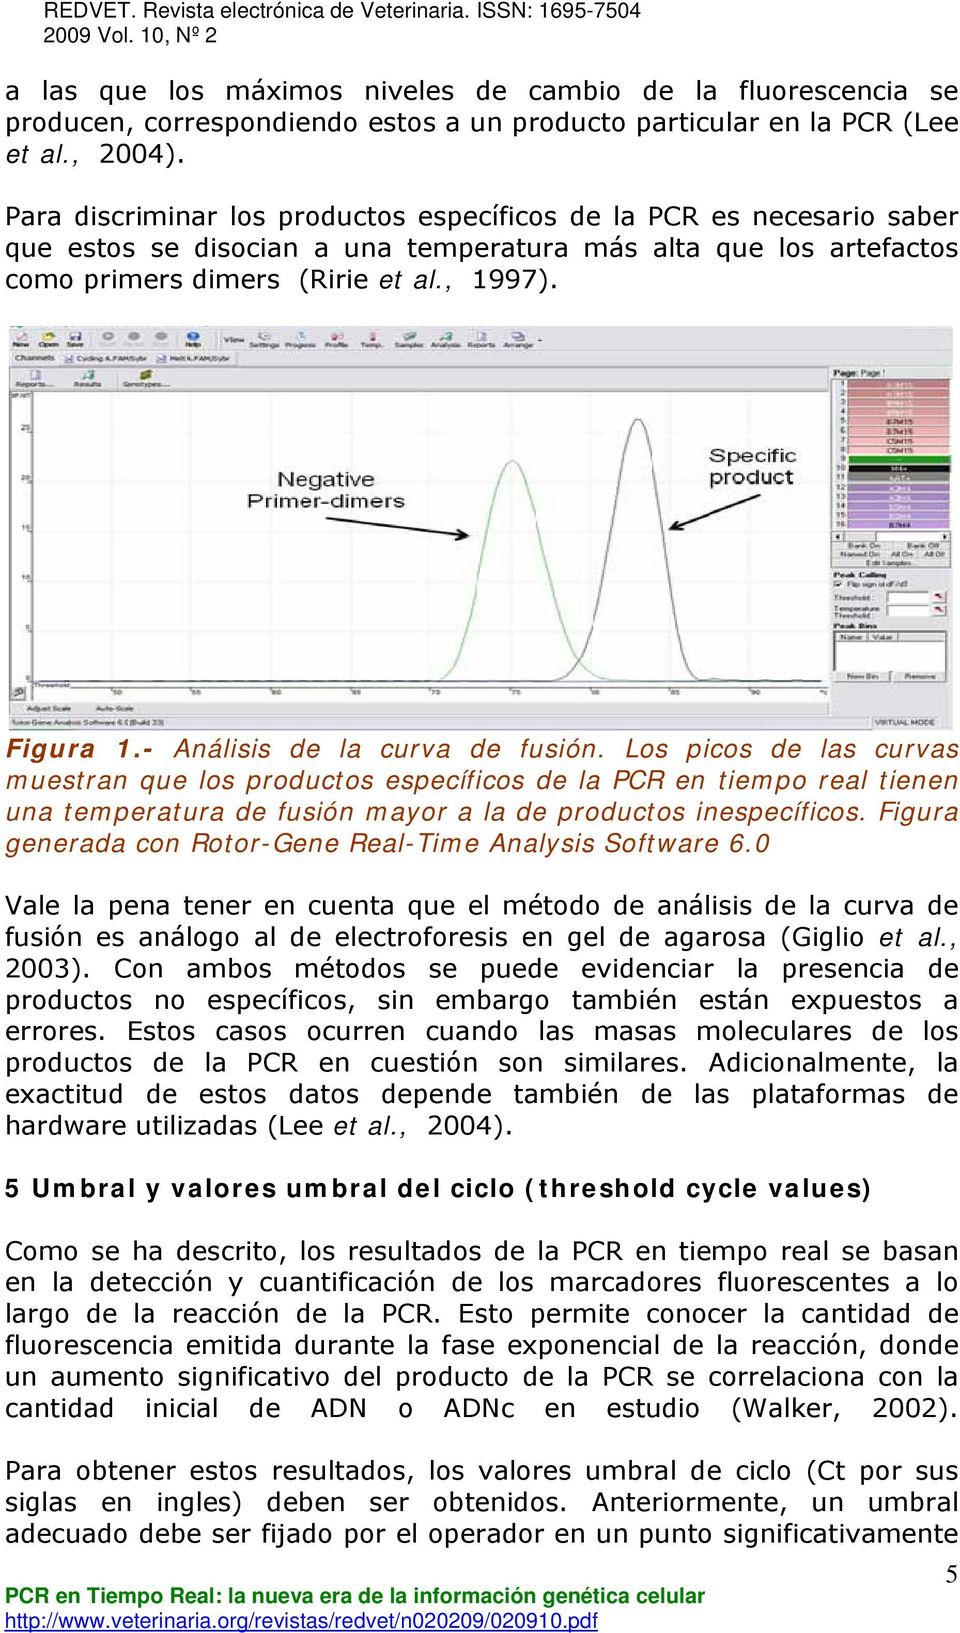 - Análisis de la curva de fusión. Los picos de las curvas muestran que los productos específicos de la PCR en tiempo real tienen una temperatura de fusión mayor a la de productos inespecíficos.